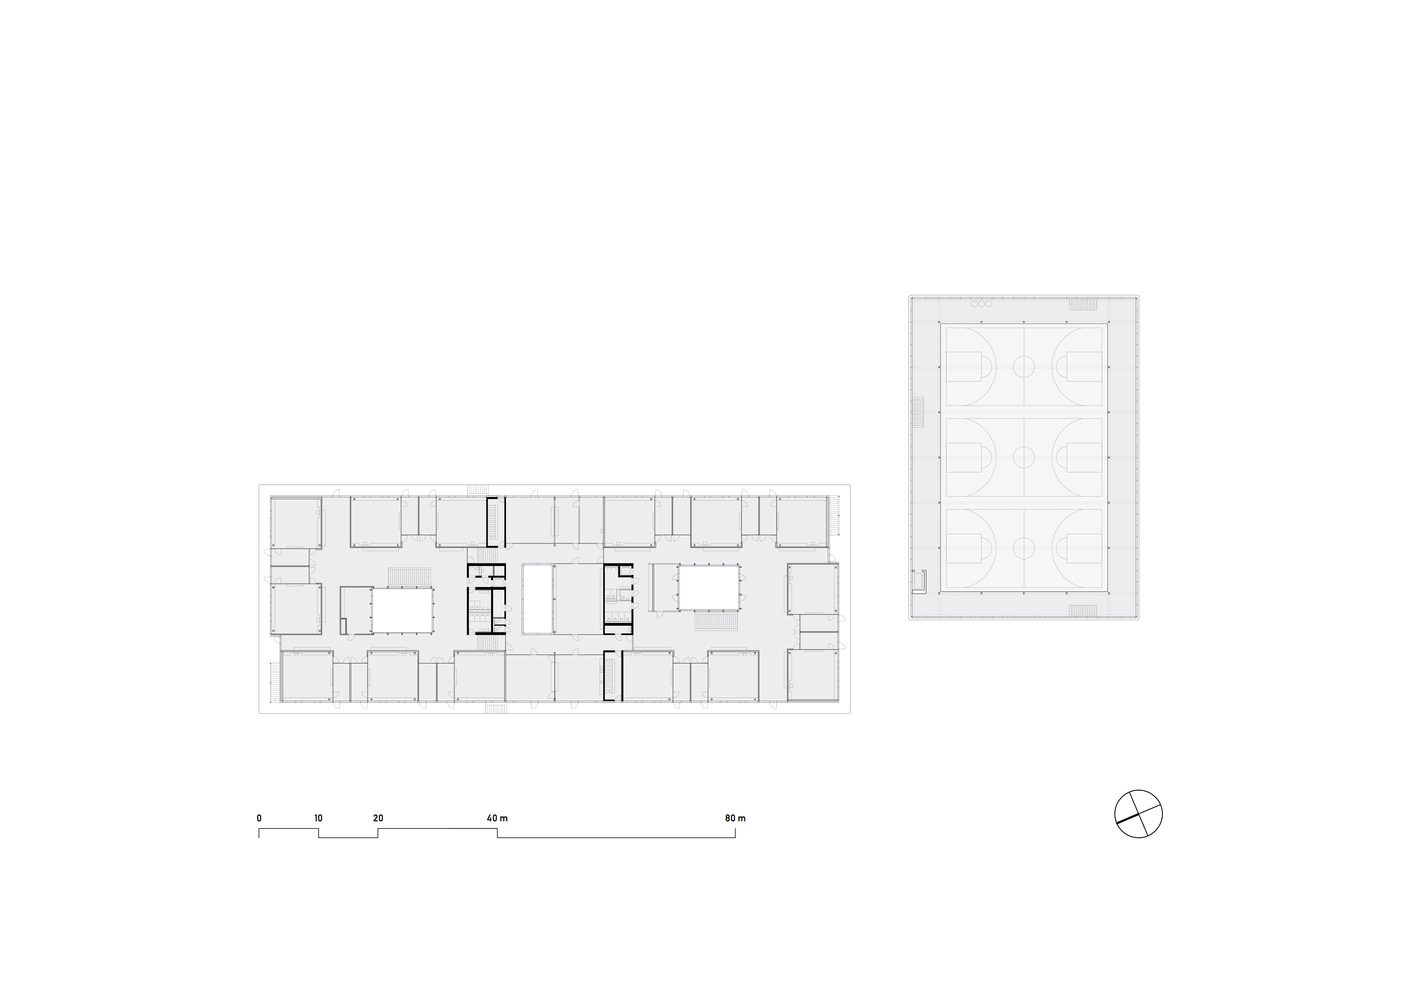 Primary School Gartenhof  BUR Architekten-78